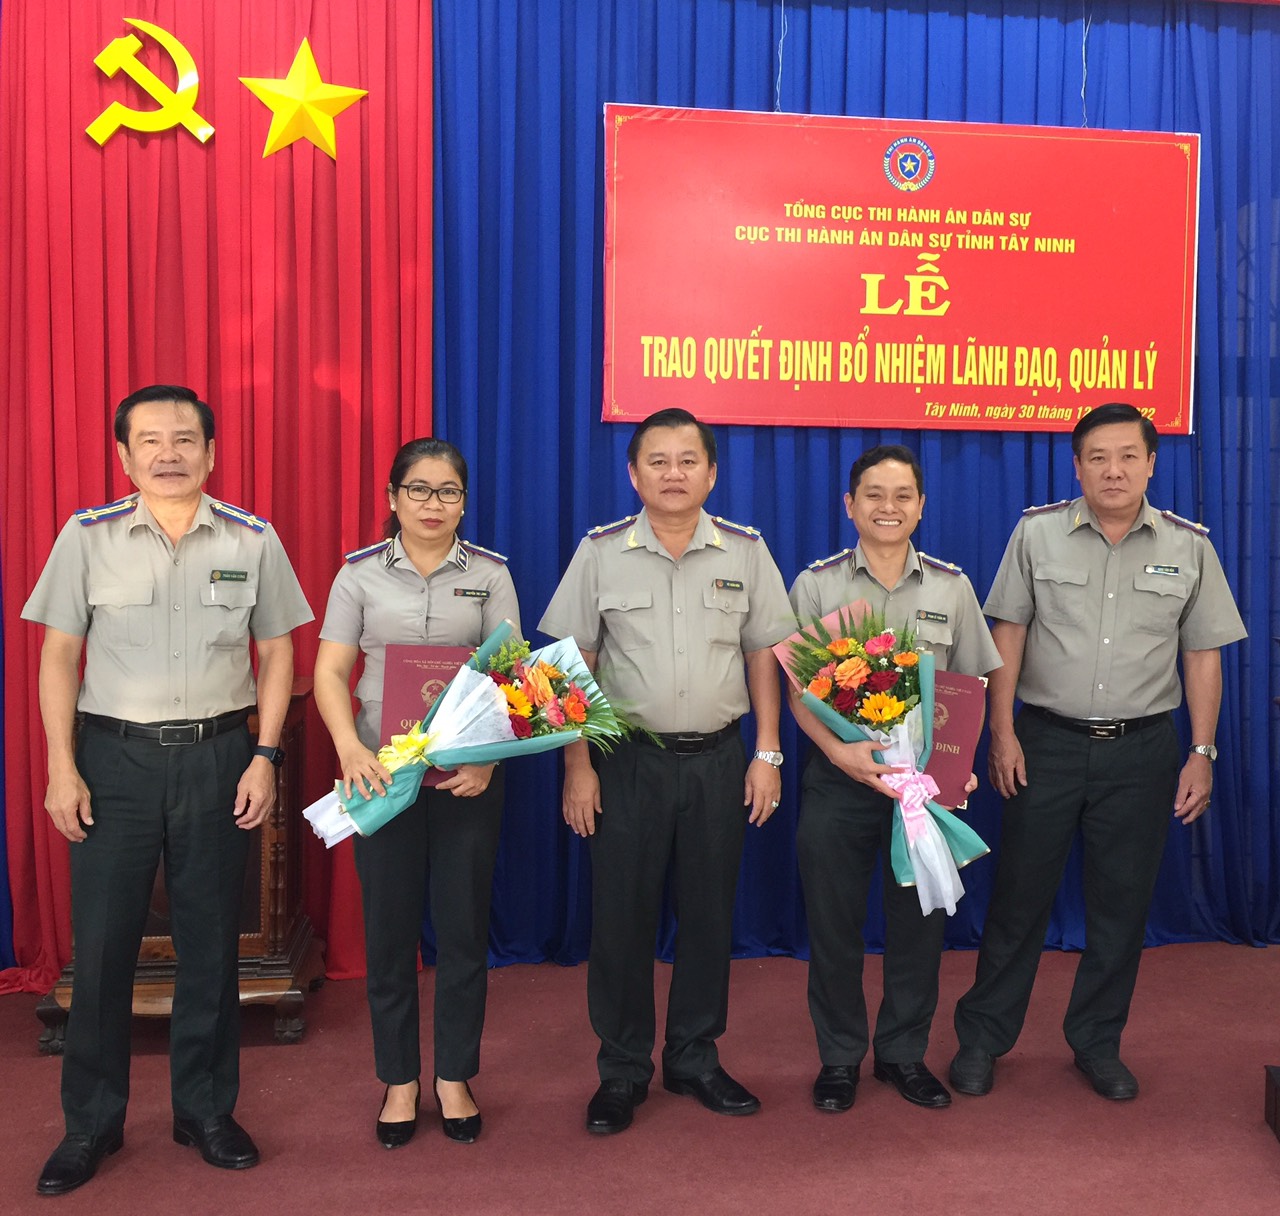 Cục Thi hành án dân sự tỉnh Tây Ninh trao quyết định bổ nhiệm công chức lãnh đạo, quản lý